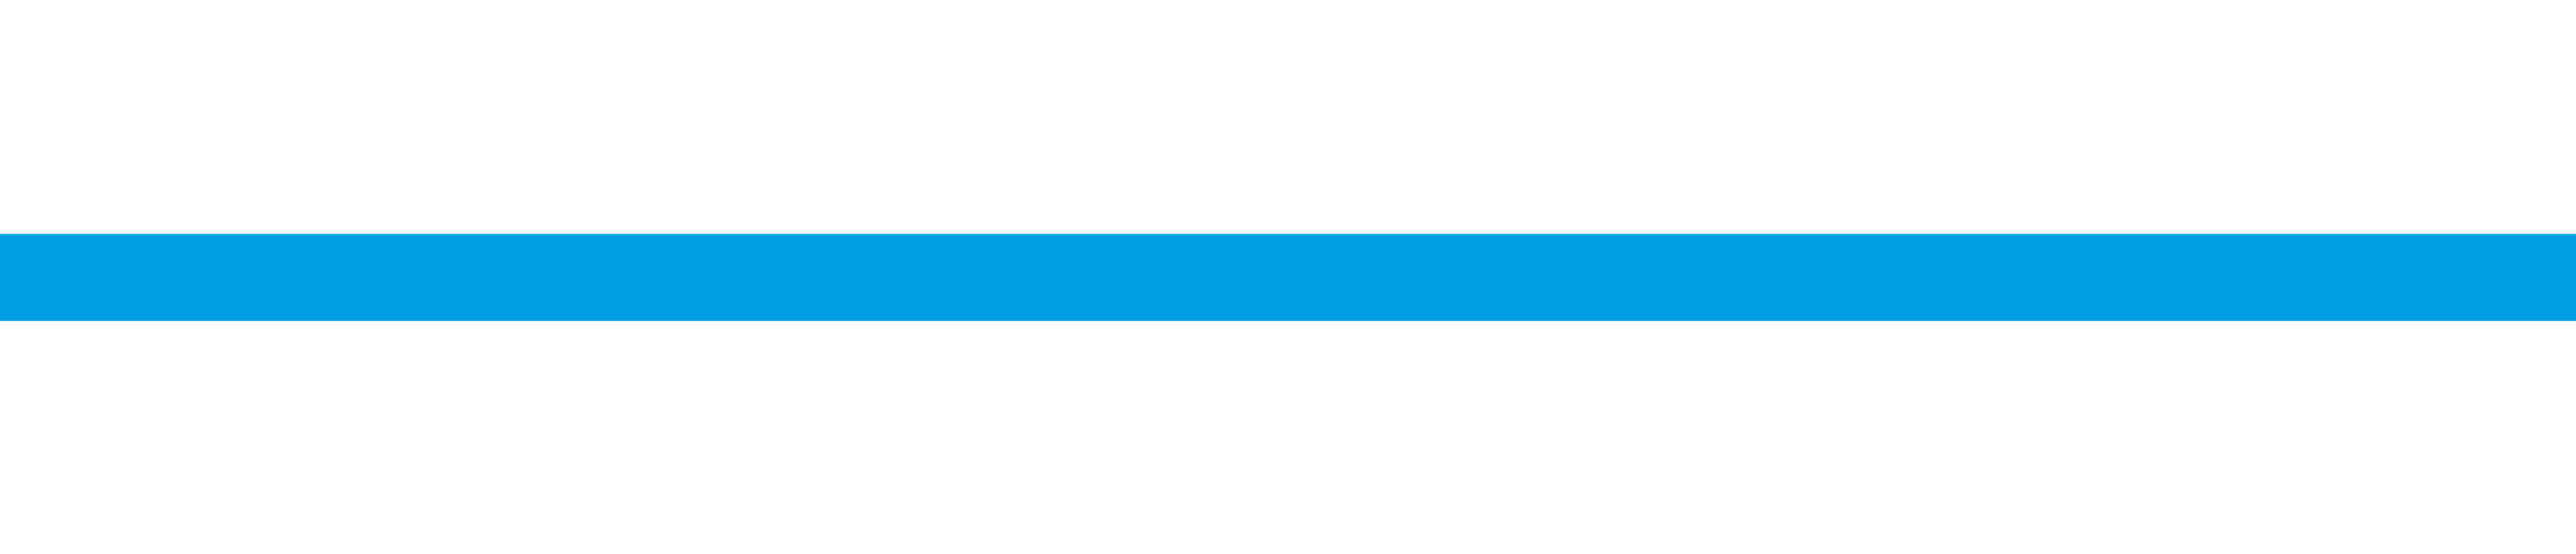 Cyan-blaue, horizontale Linie als grafisches Branding-Element.